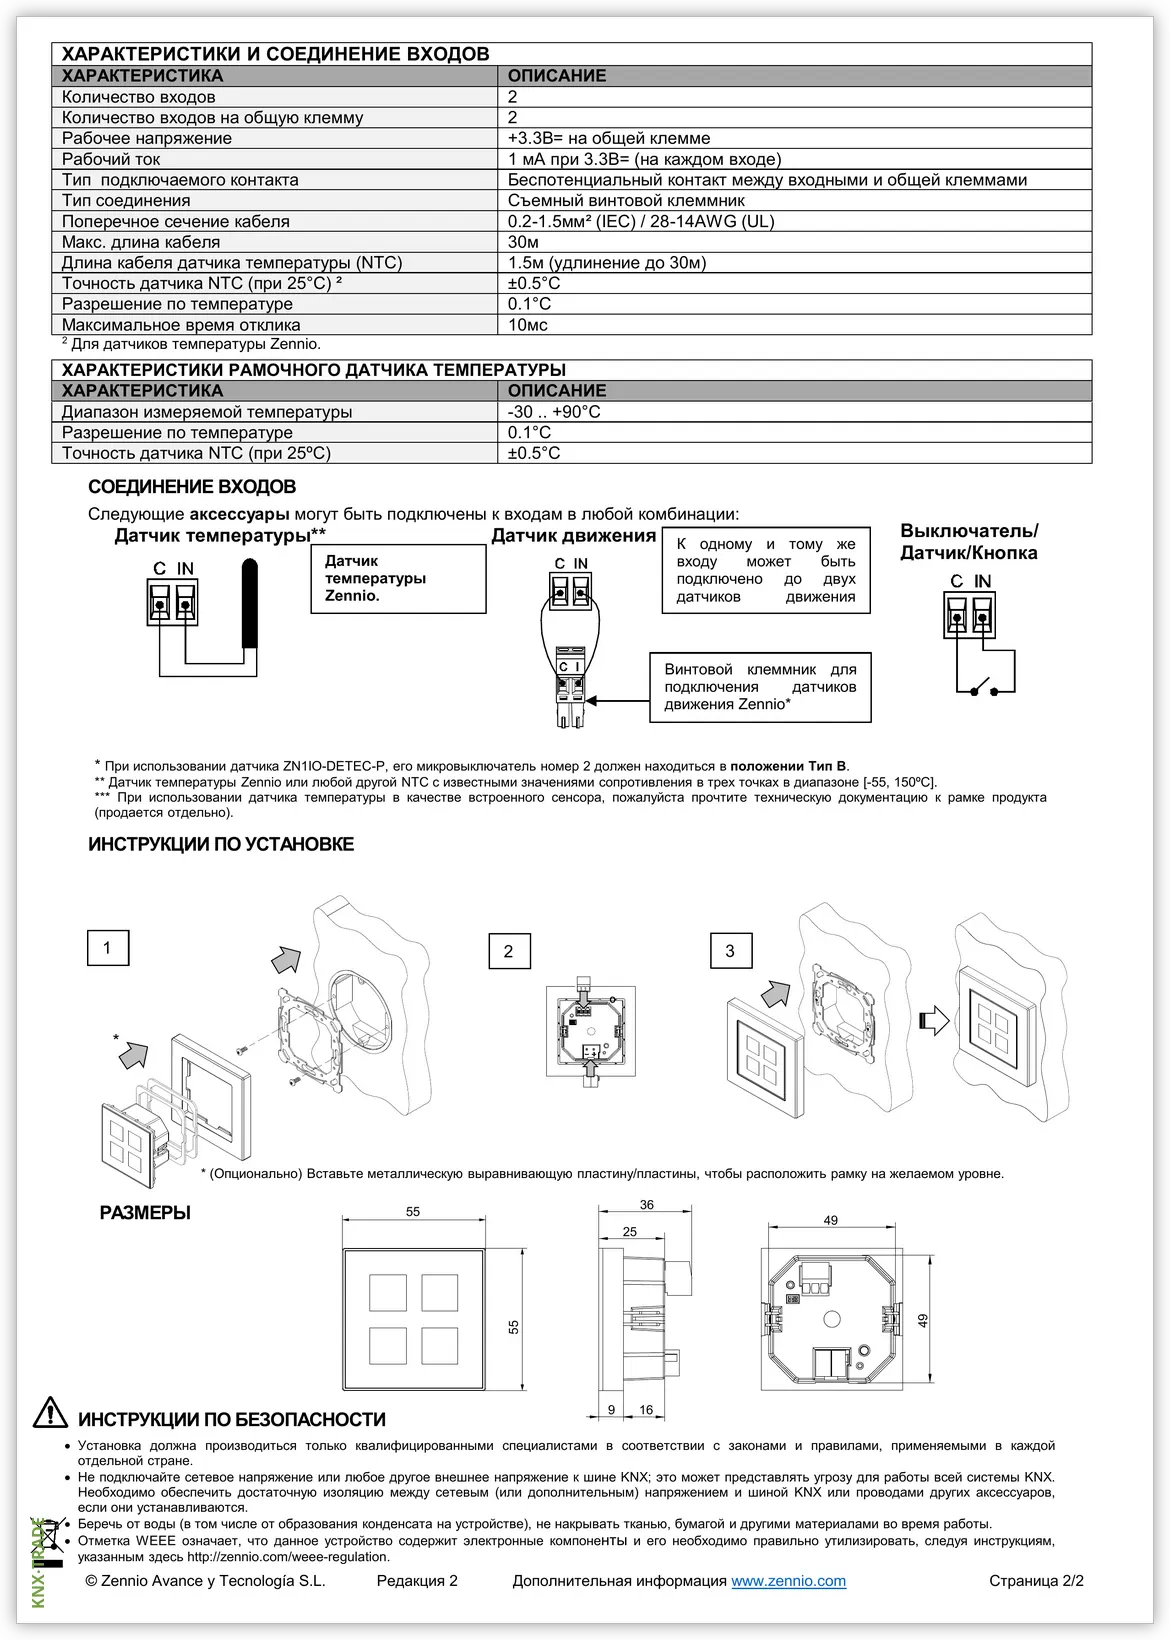 Datasheet (2) Zennio [ZVI-F55] Flat 55 / Выключатель сенсорный KNX, с подсветкой пиктограмм, 55x55мм